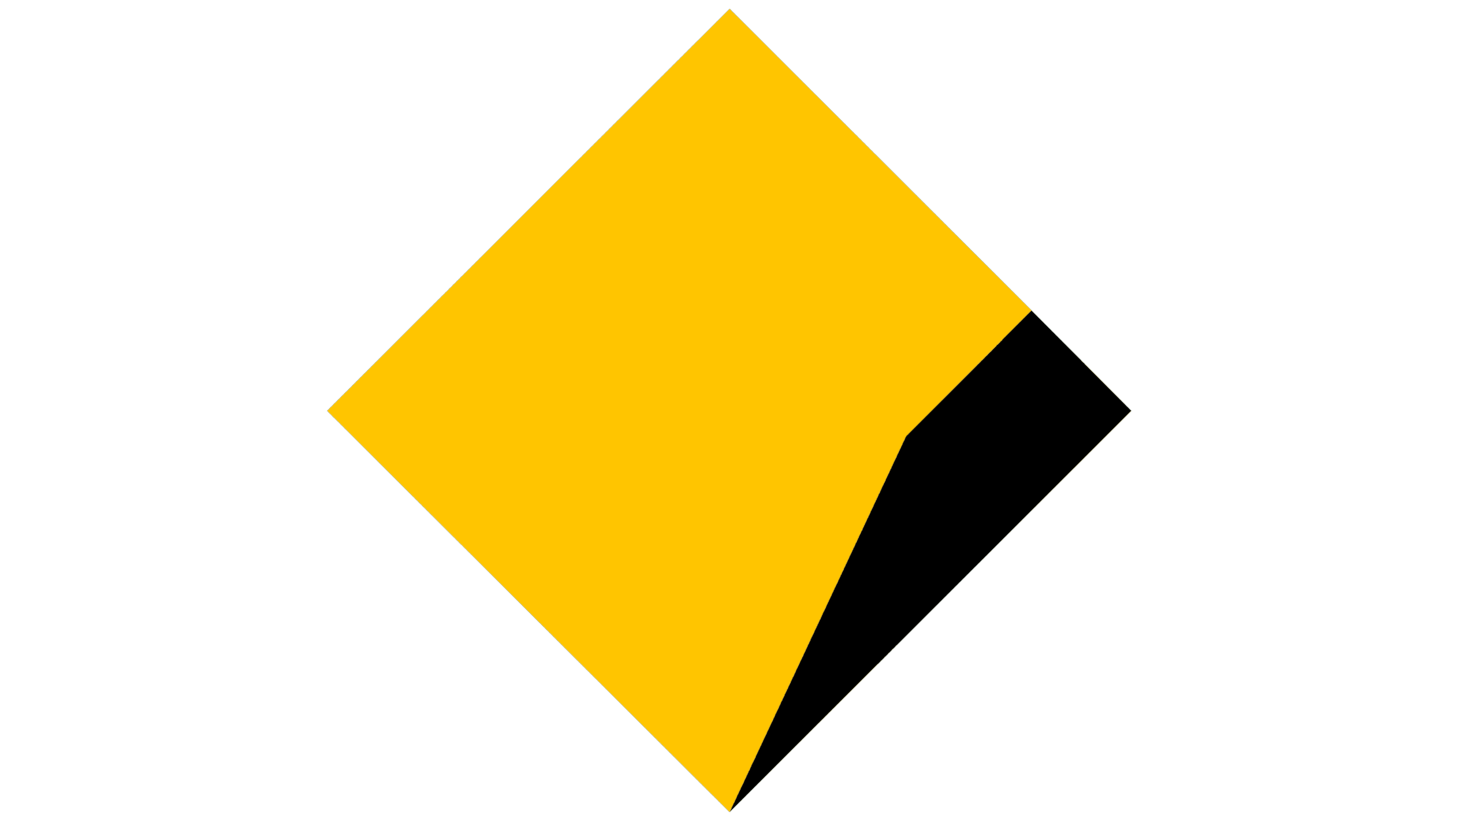 Commonwealth bank logo